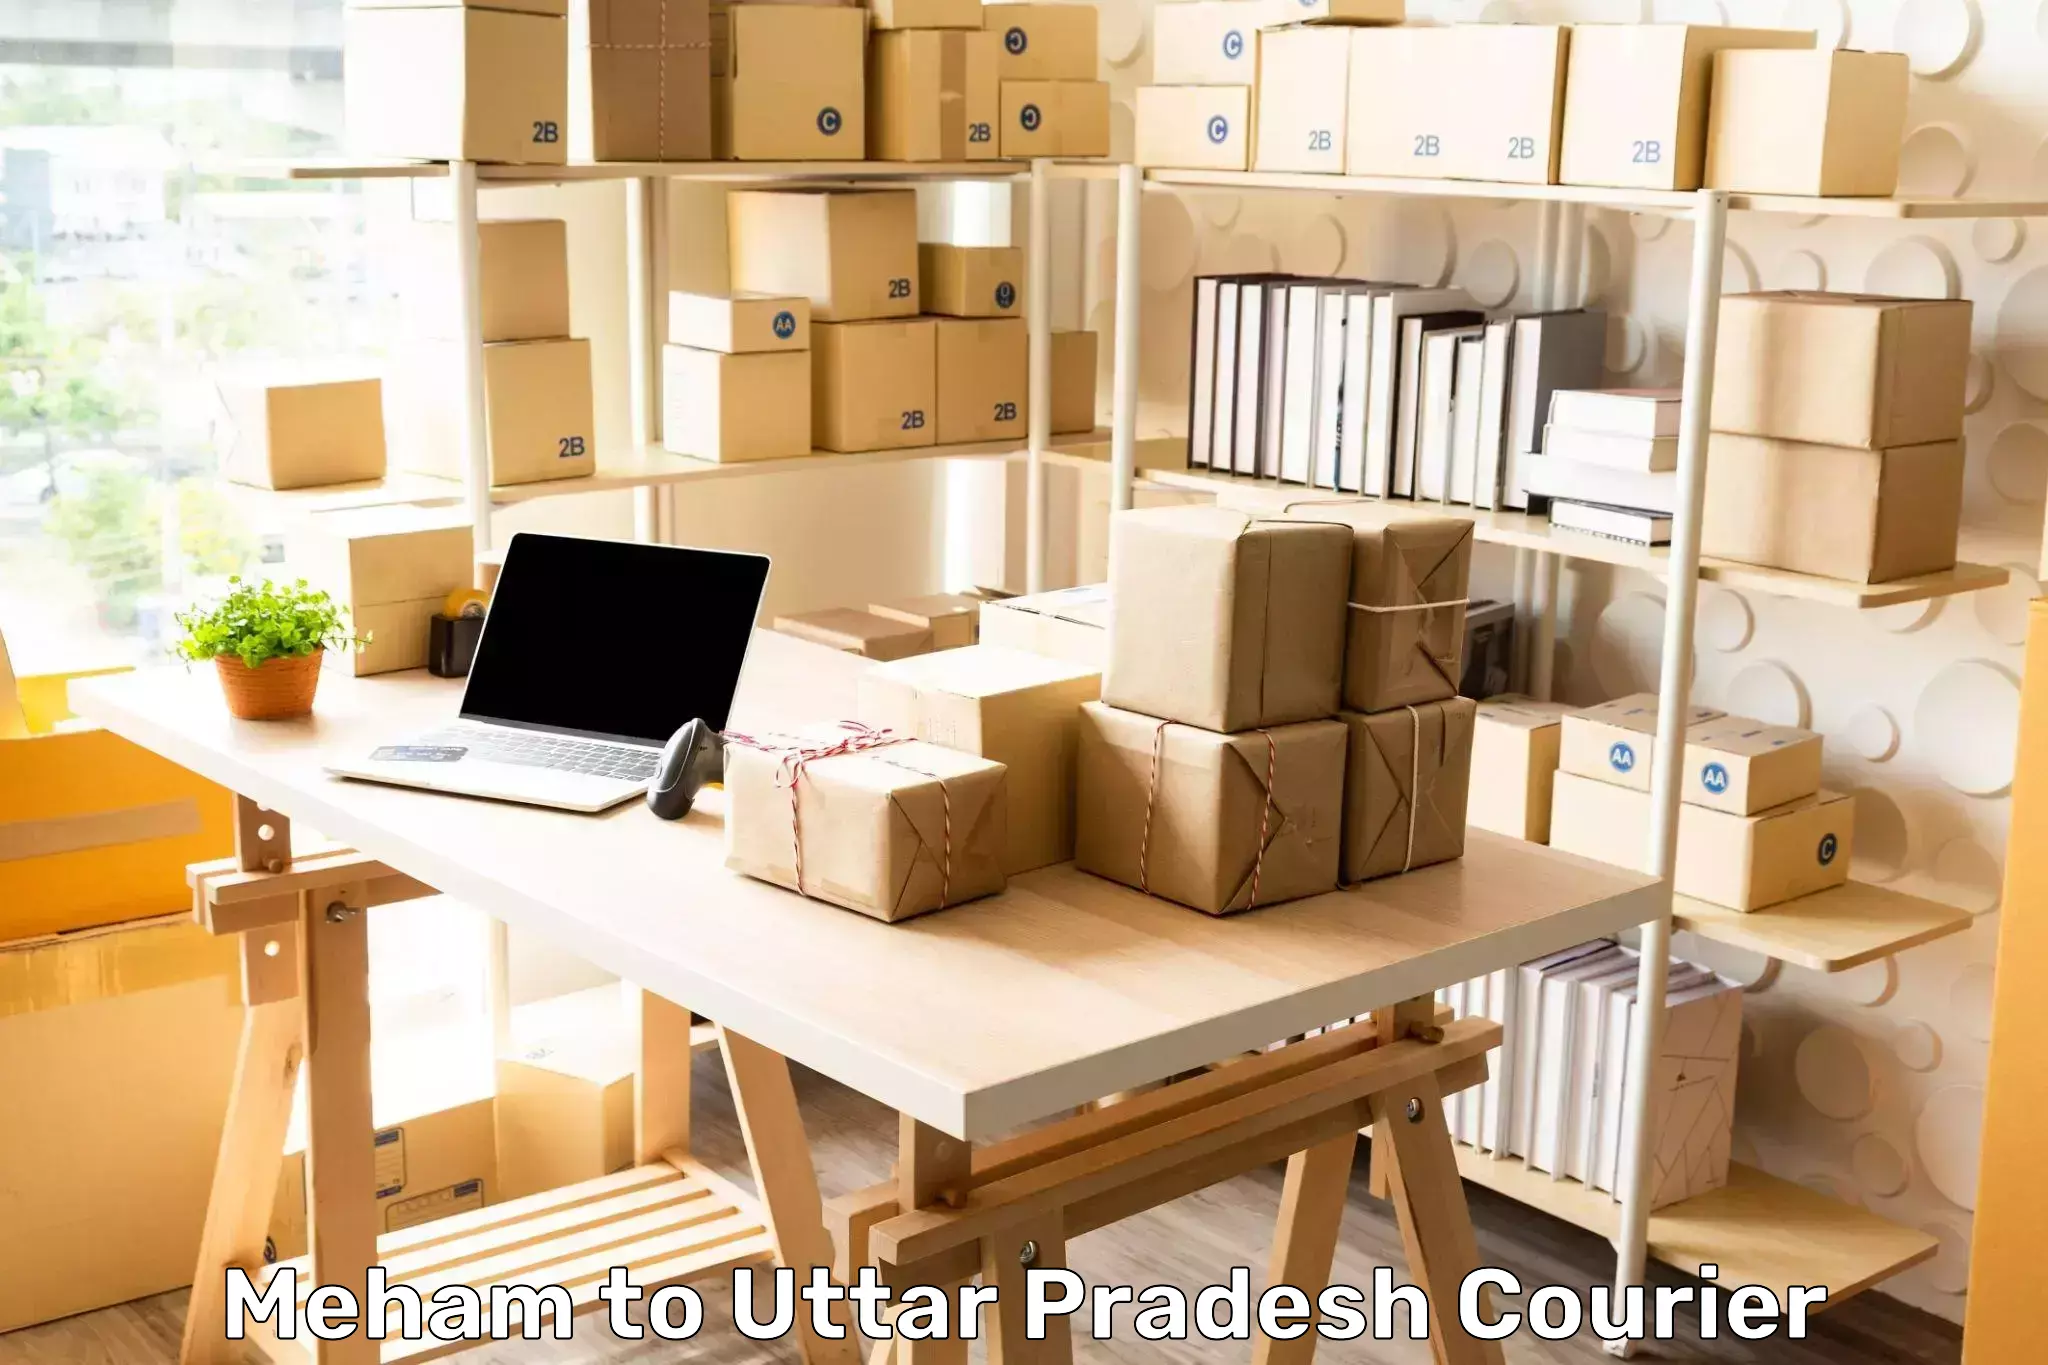 Urgent courier needs Meham to Uttar Pradesh